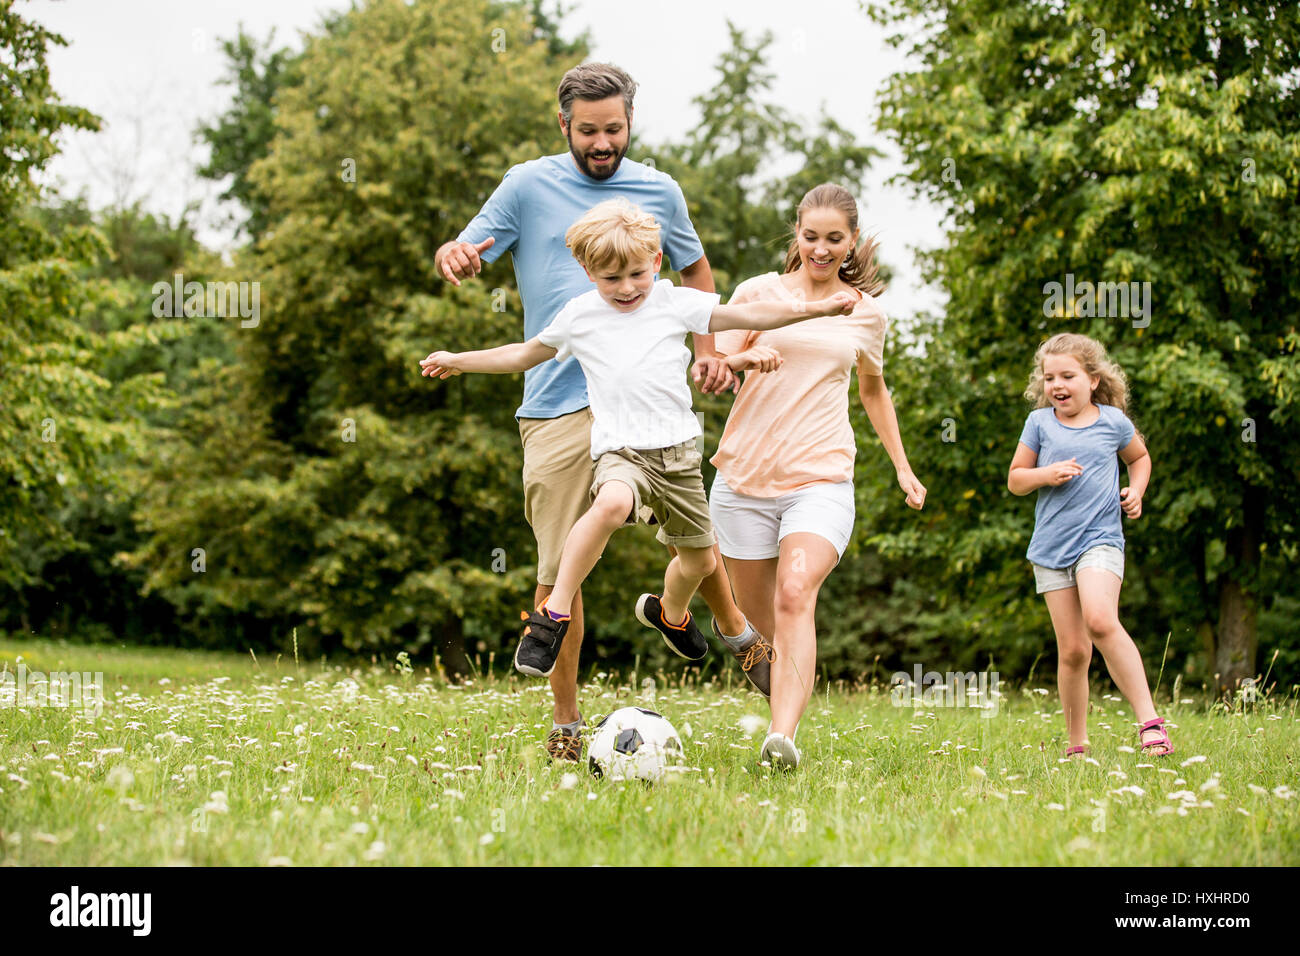 Famille joue au soccer dans le parc et s'amusant Banque D'Images